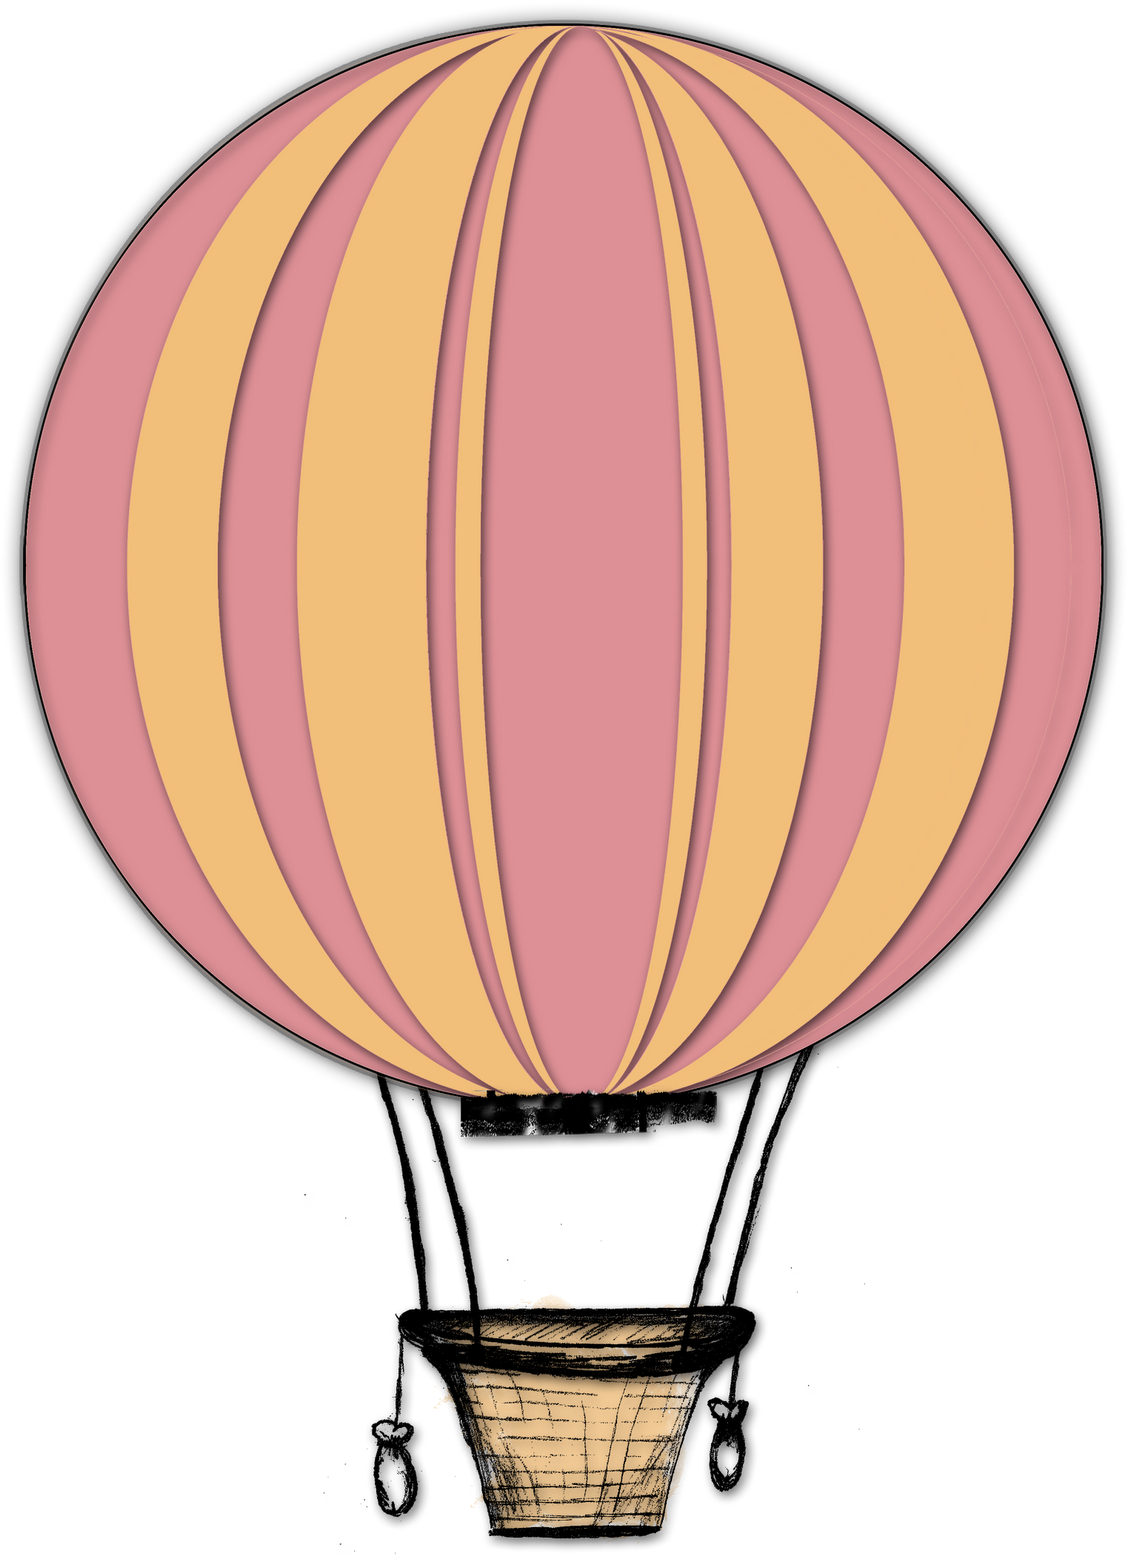 Drawn Hot Air Balloon Lantern - Vintage Hot Air Balloon Clipart (1304x1600)